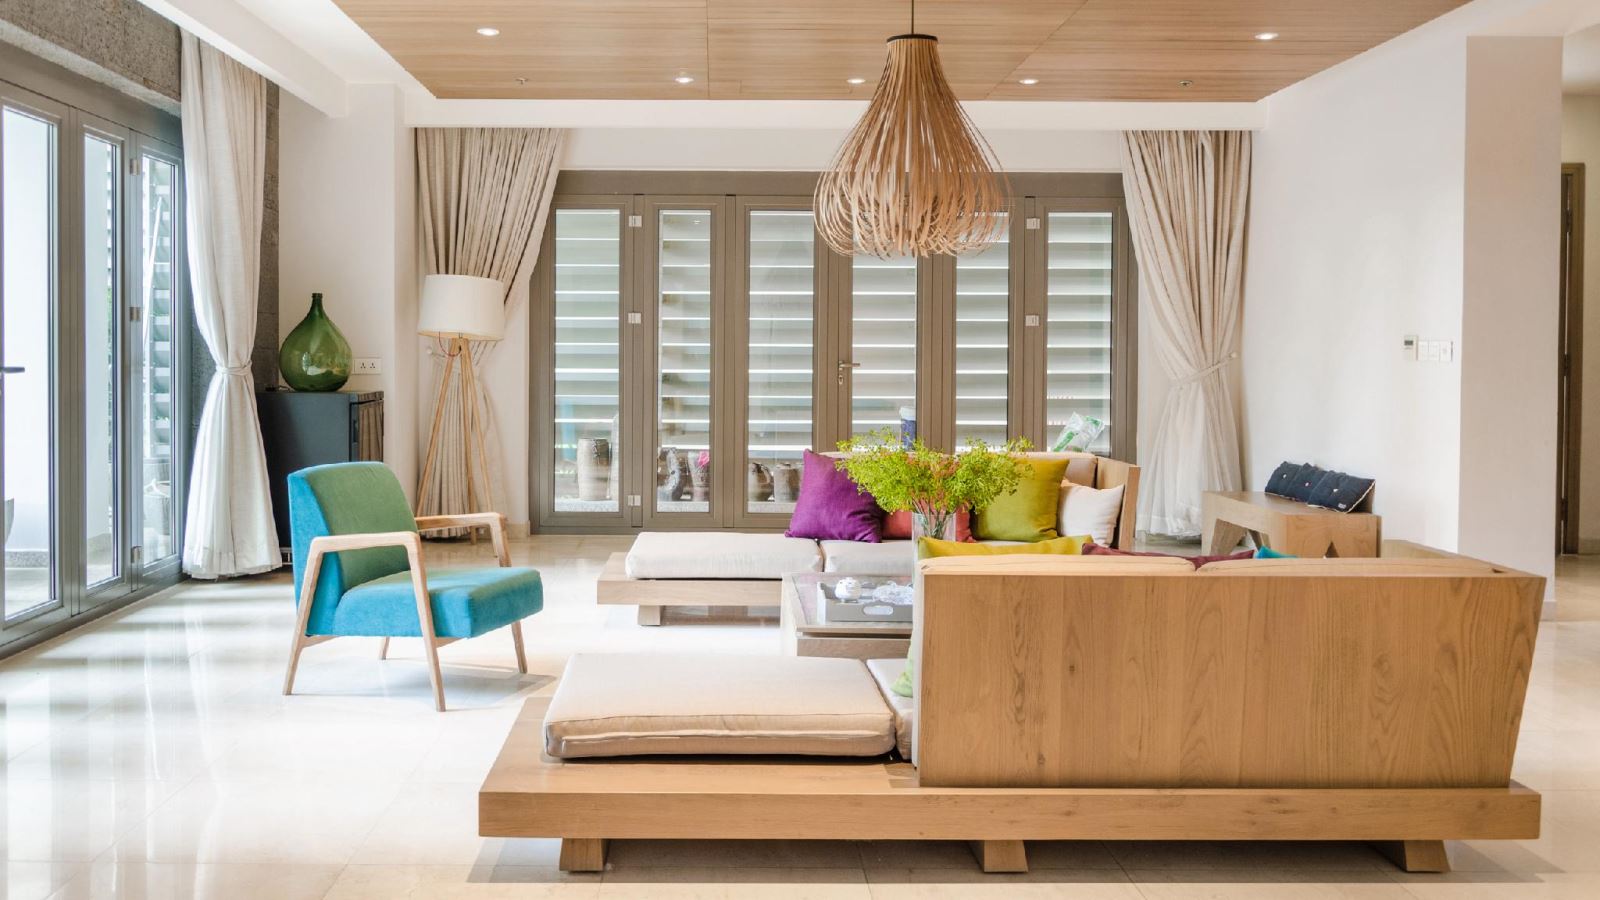 Thiết kế nội thất căn hộ đẹp với chất liệu gỗ tự nhiên